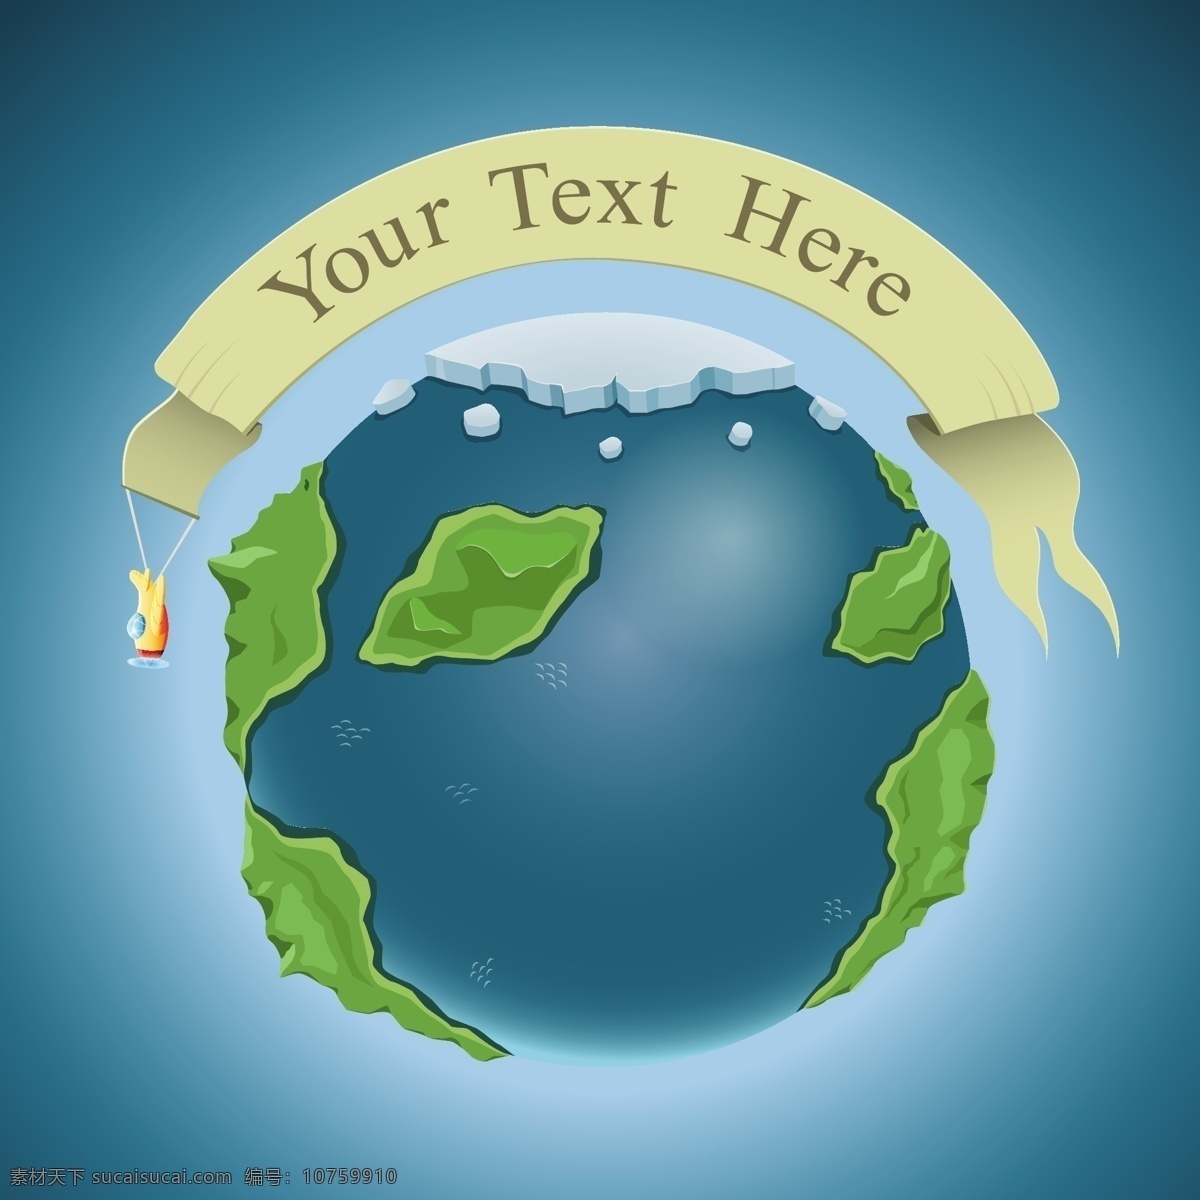 爱护地球 保护地球 标志图标 地球 地球标志 地球设计 地球图标 科幻 地球星球设计 星球 世界 宇宙 其他图标 psd源文件